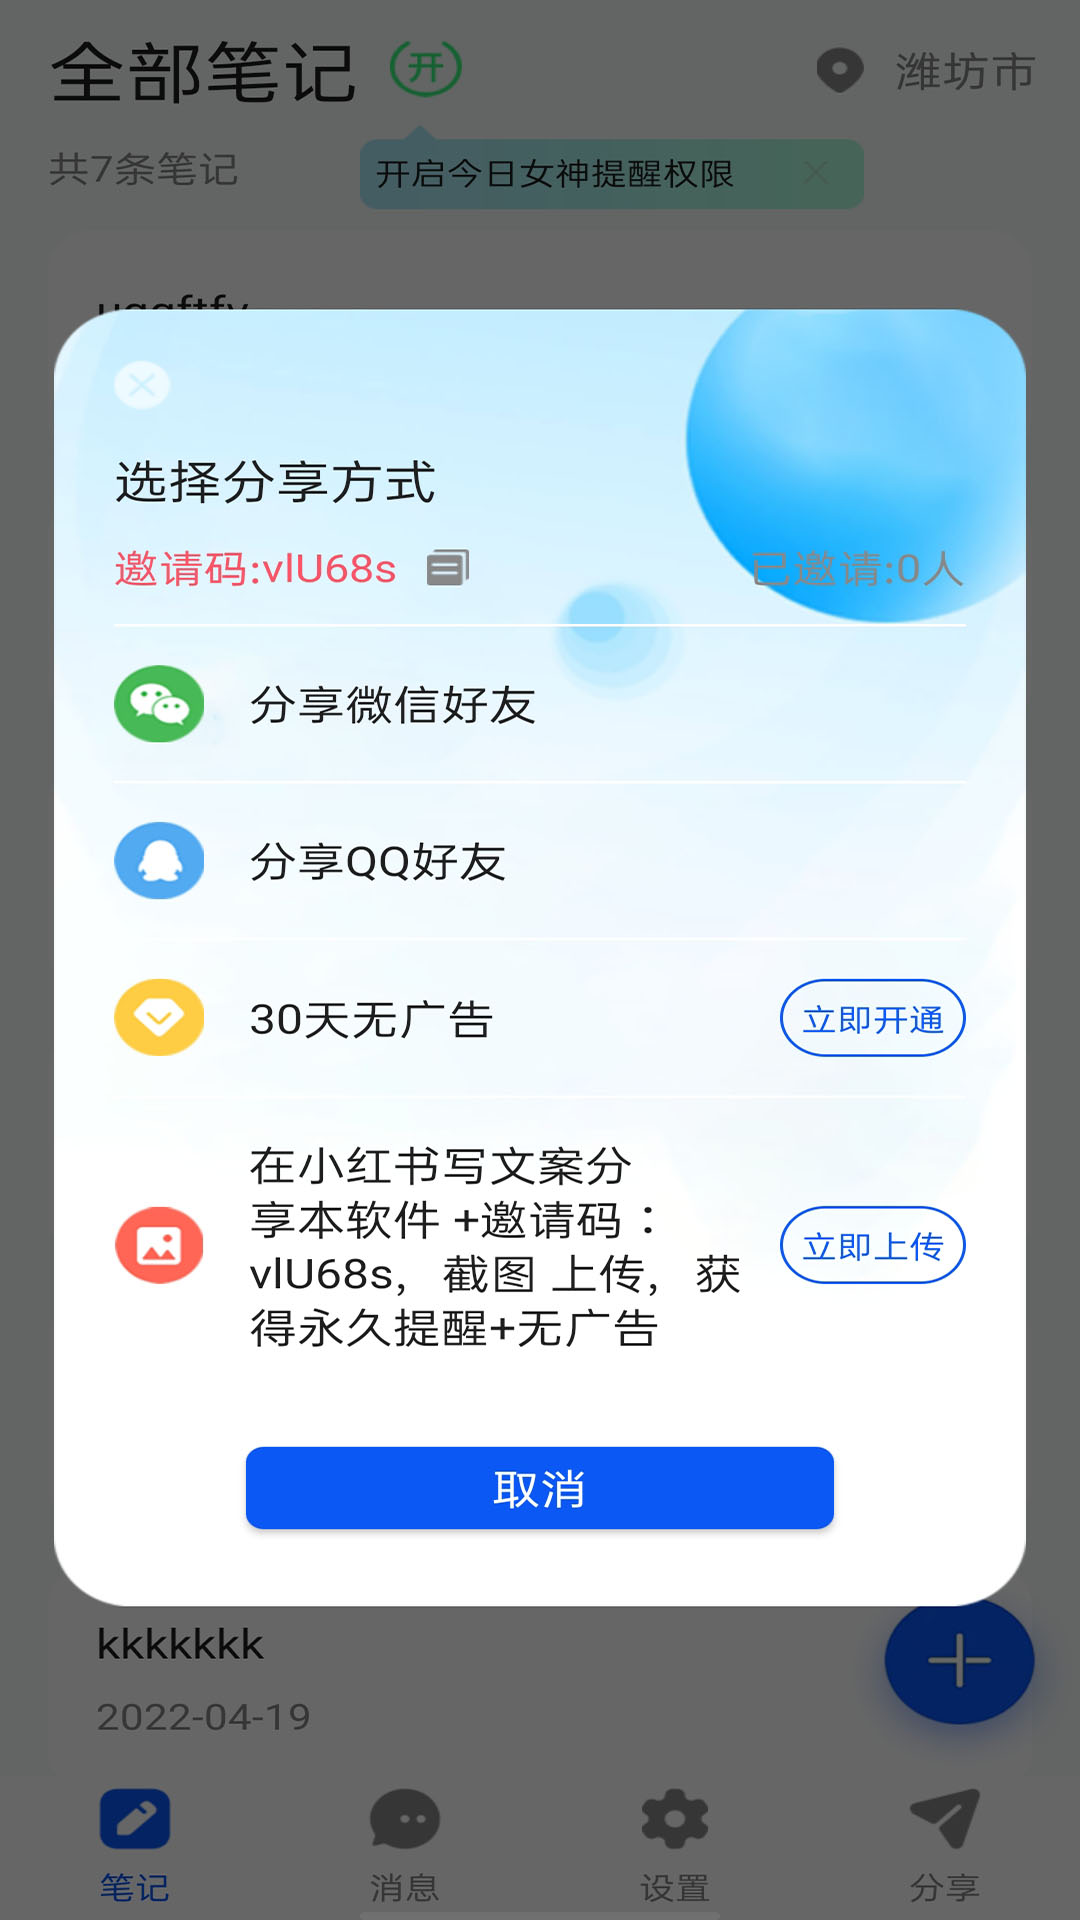 女神笔记本官方app下载 v1.0.0